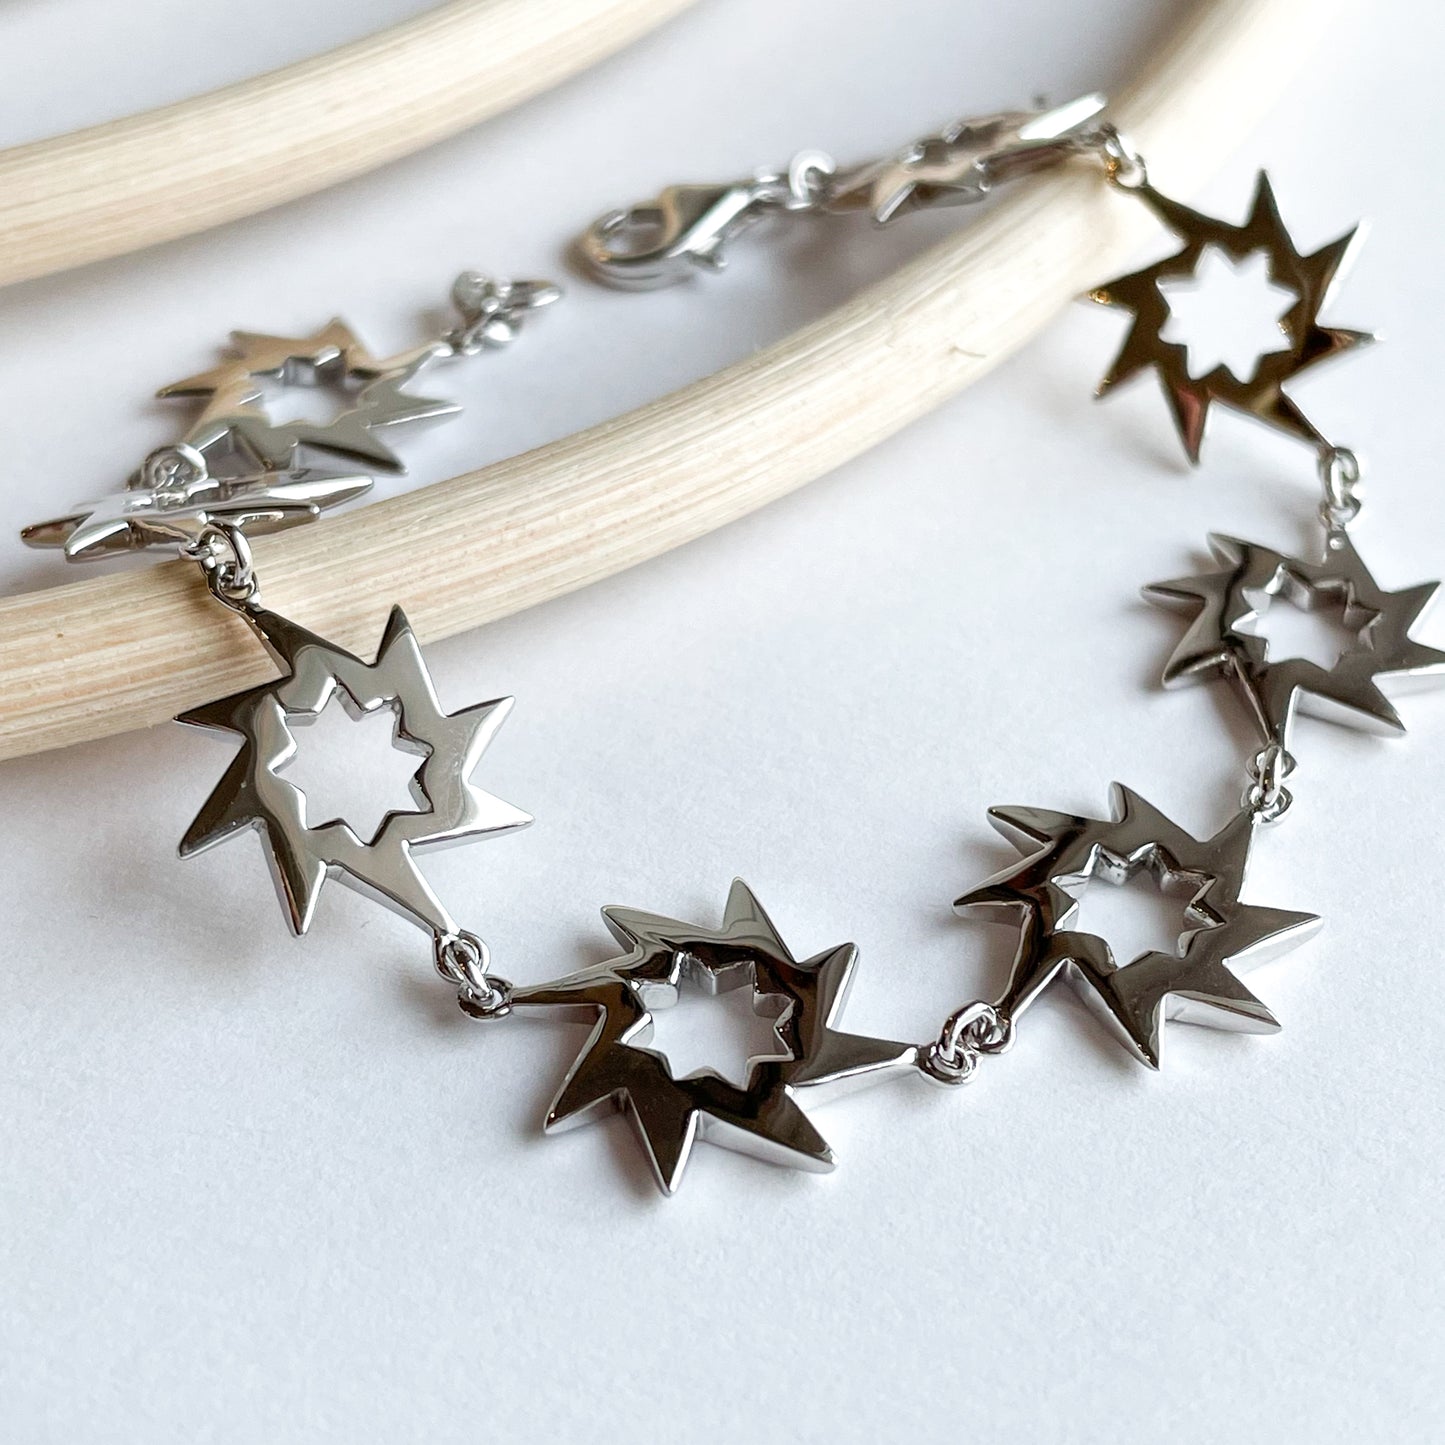 Star Spike Bracelet - Solid Sterling Silver